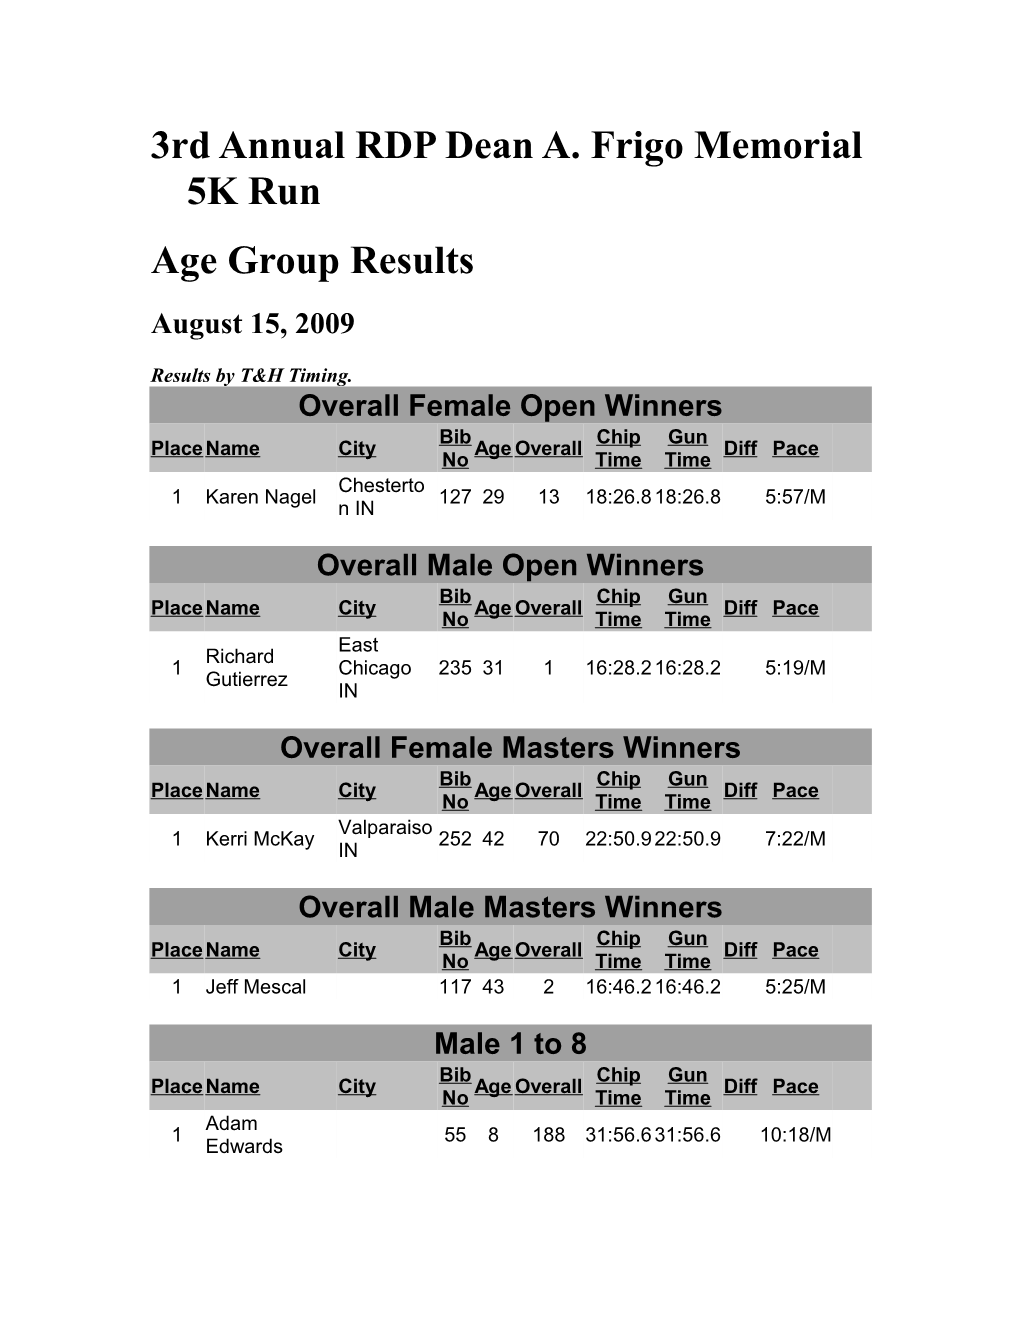 3Rd Annual RDP Dean A. Frigo Memorial 5K Run 5K Run